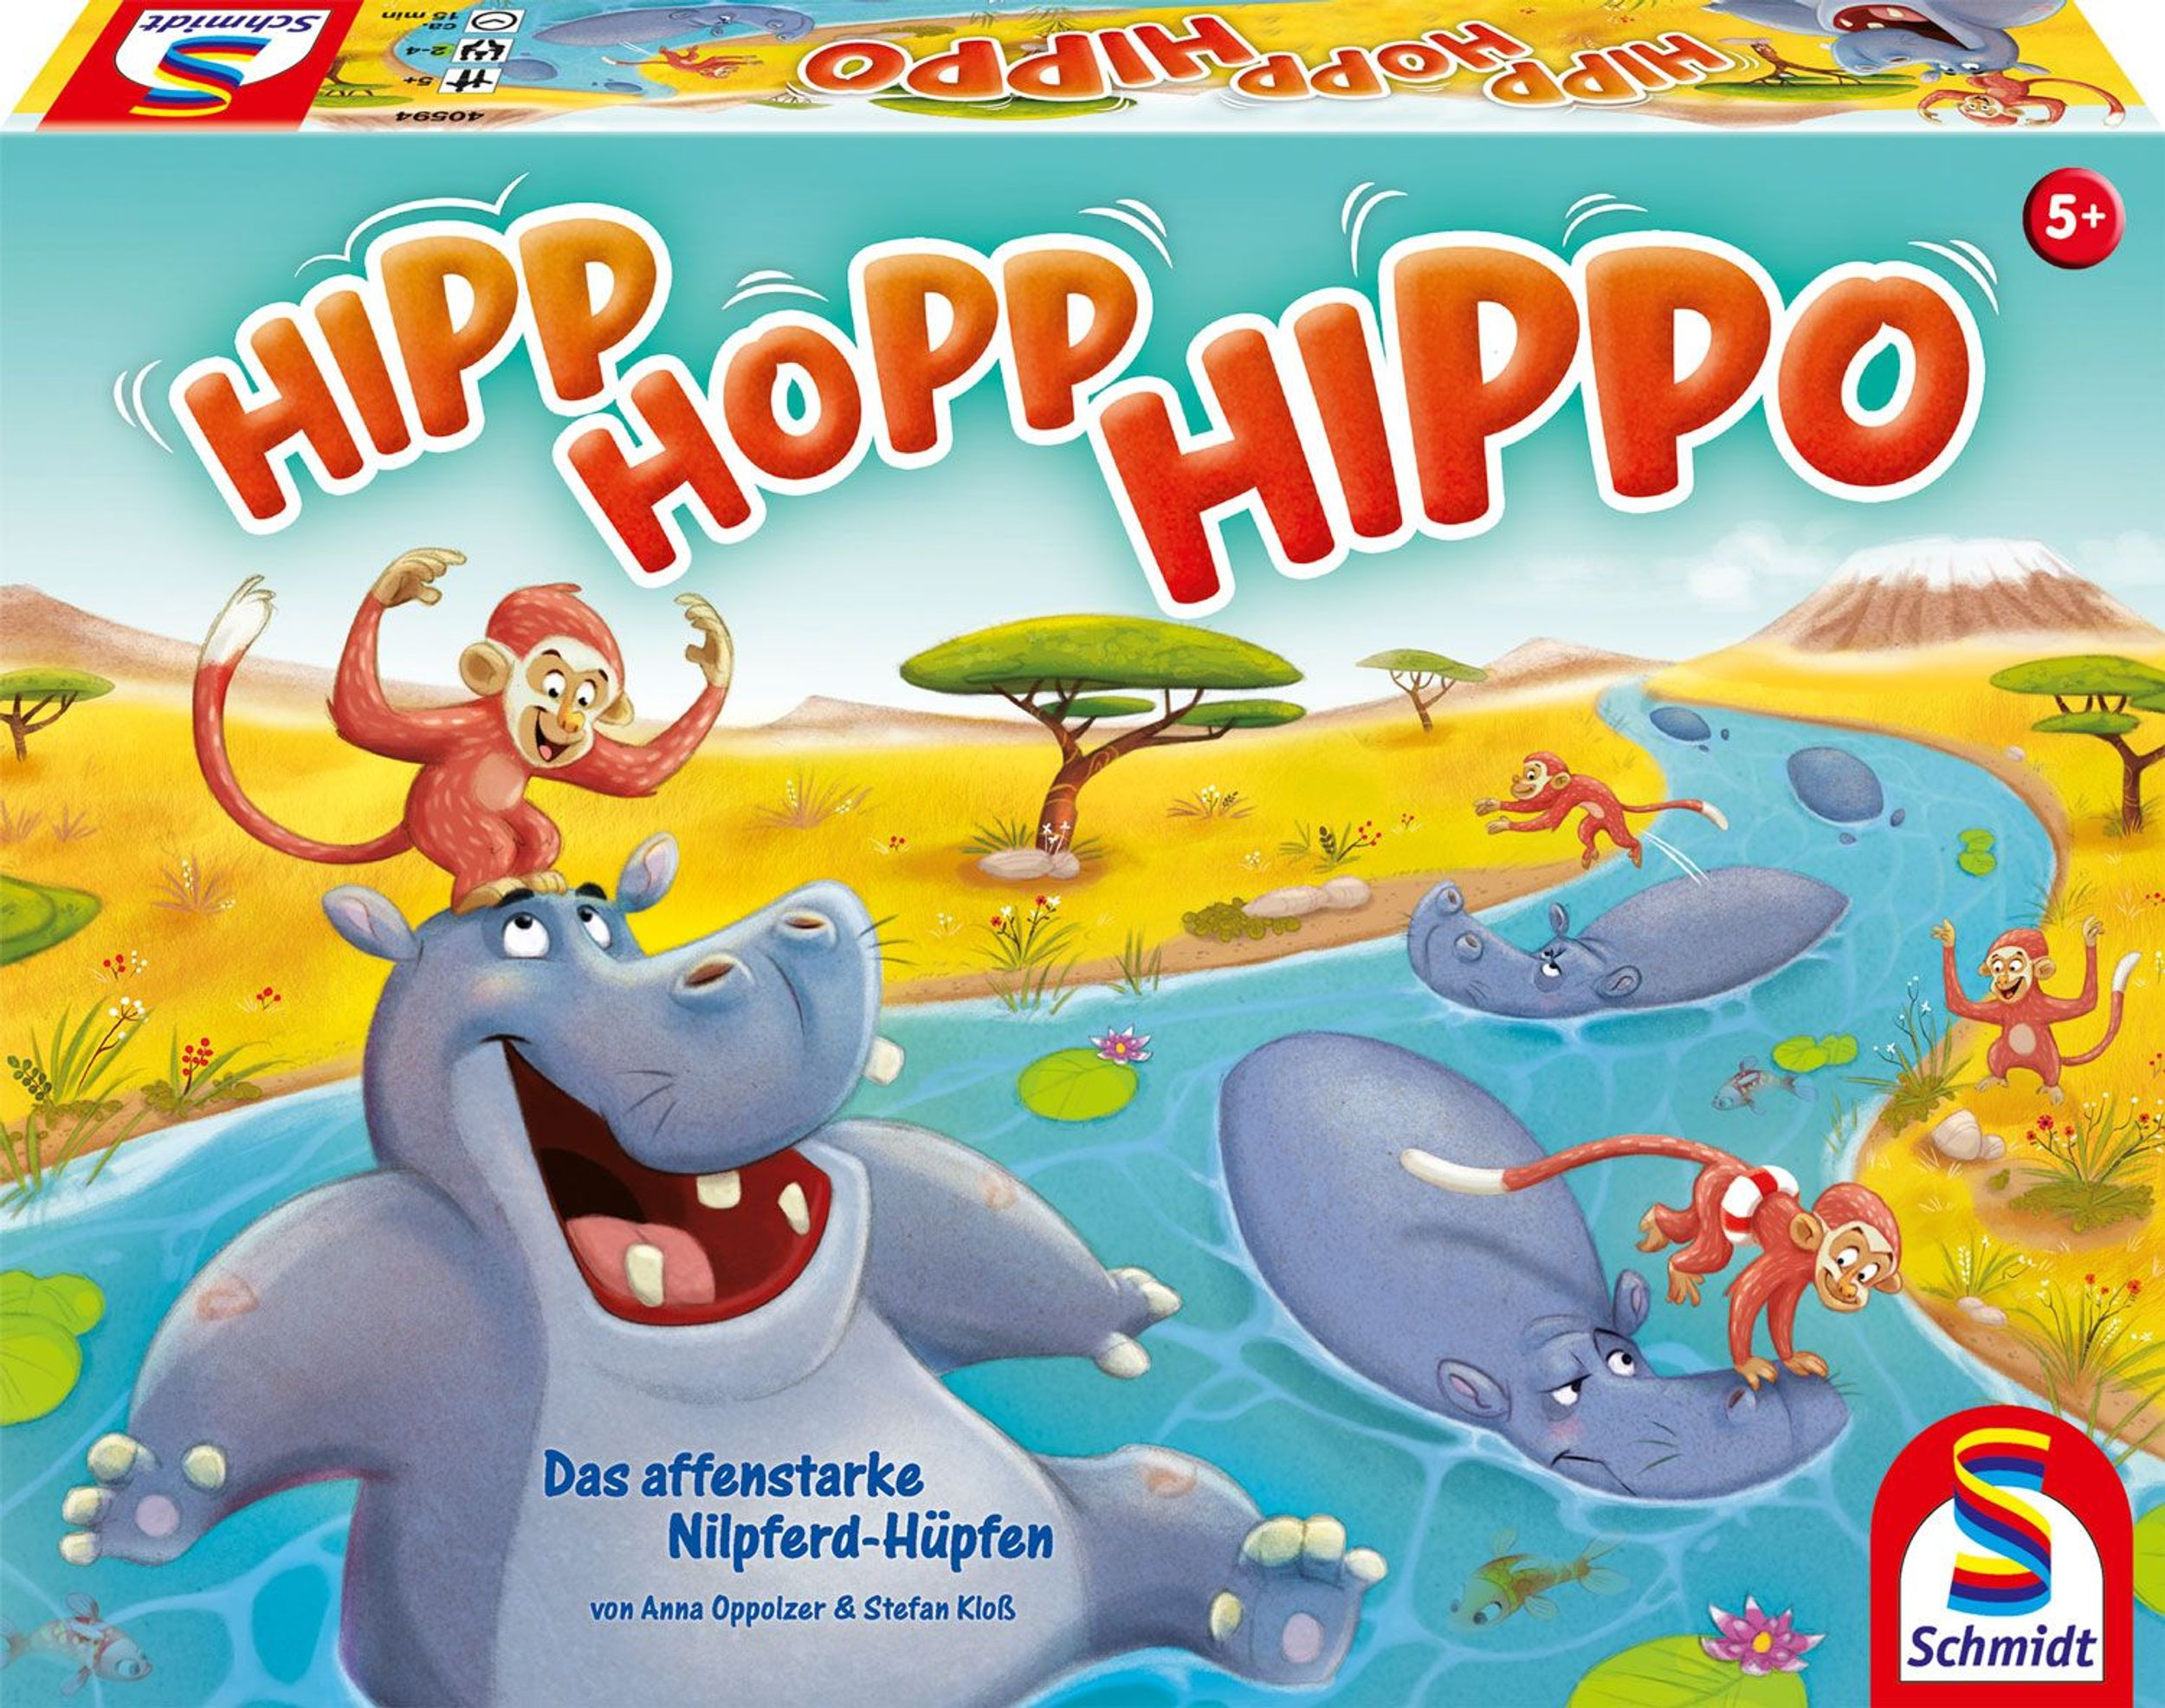 SCHMIDT SPIELE Hippo, Hopp, Hurra Gesellschaftsspiel